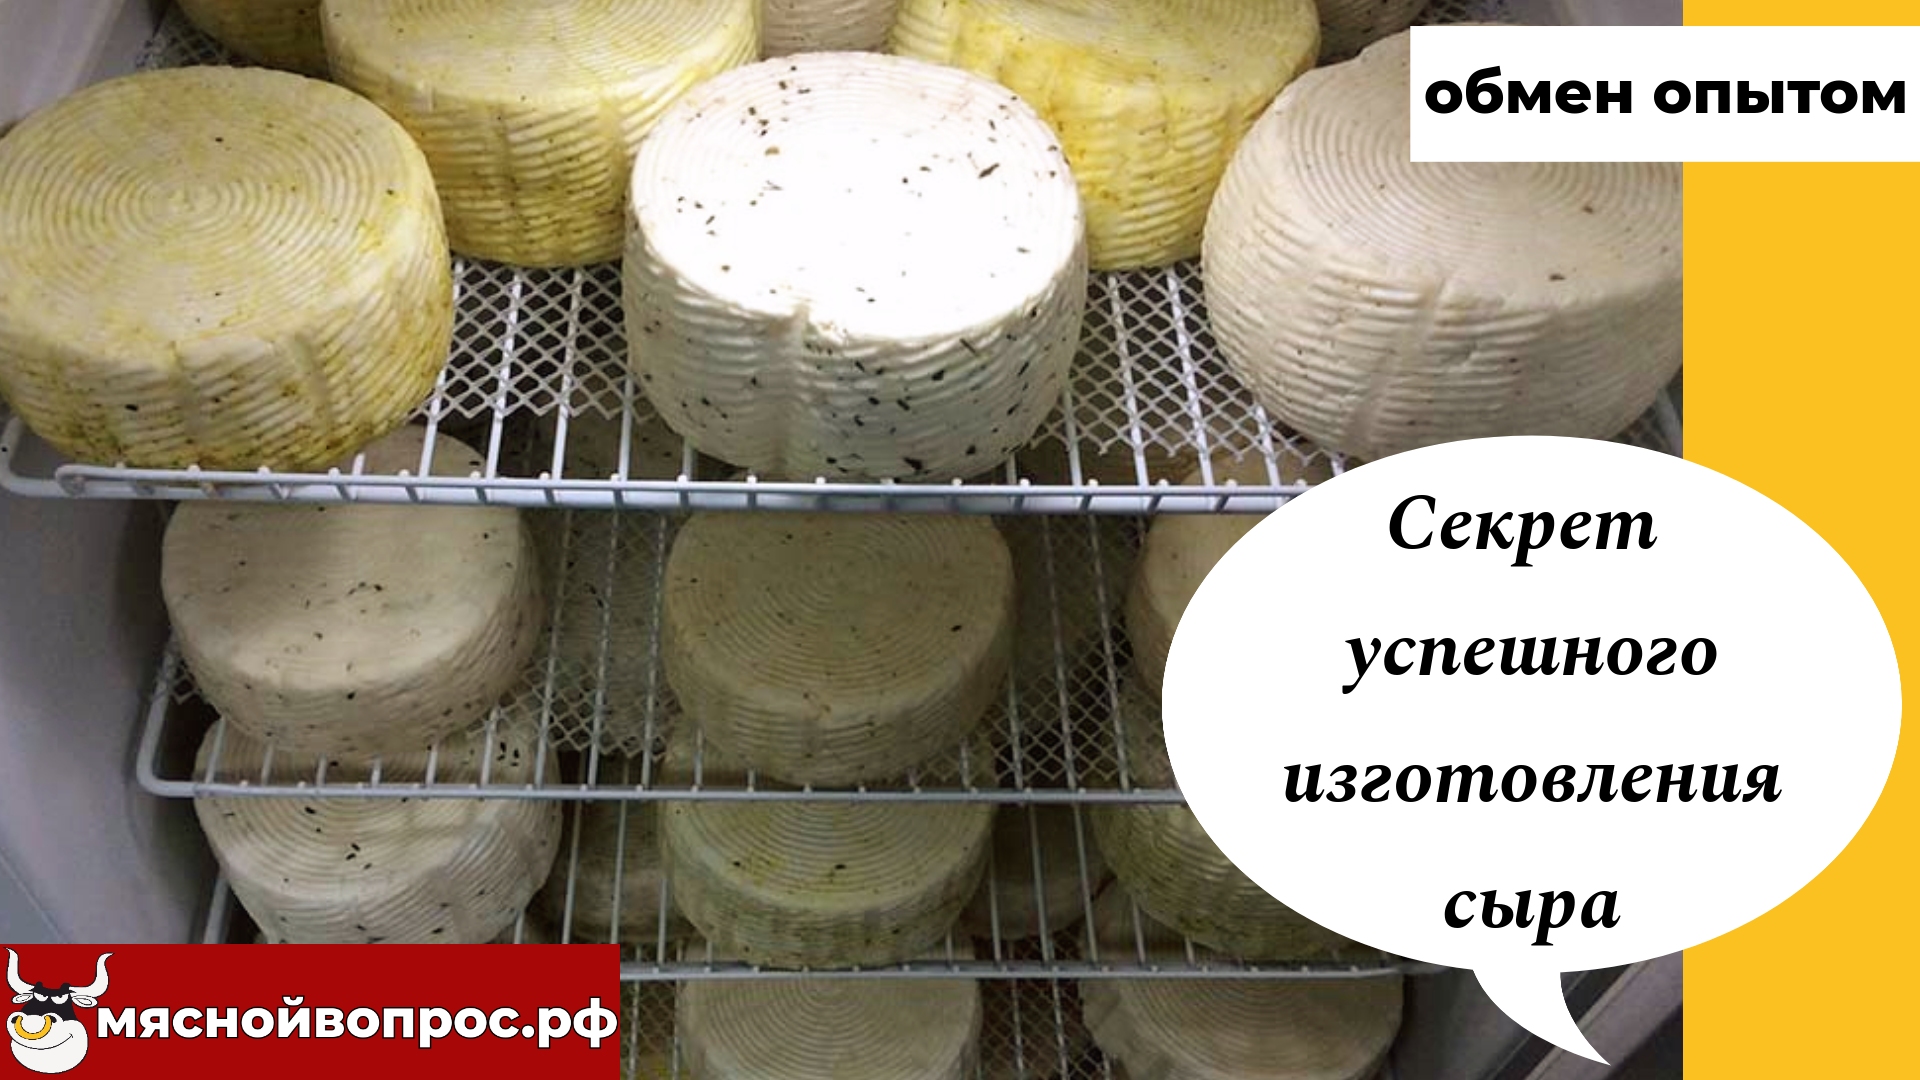 мяснойвопрос.рф - ОБМЕН ОПЫТОМ. Секрет успешного изготовления сыра